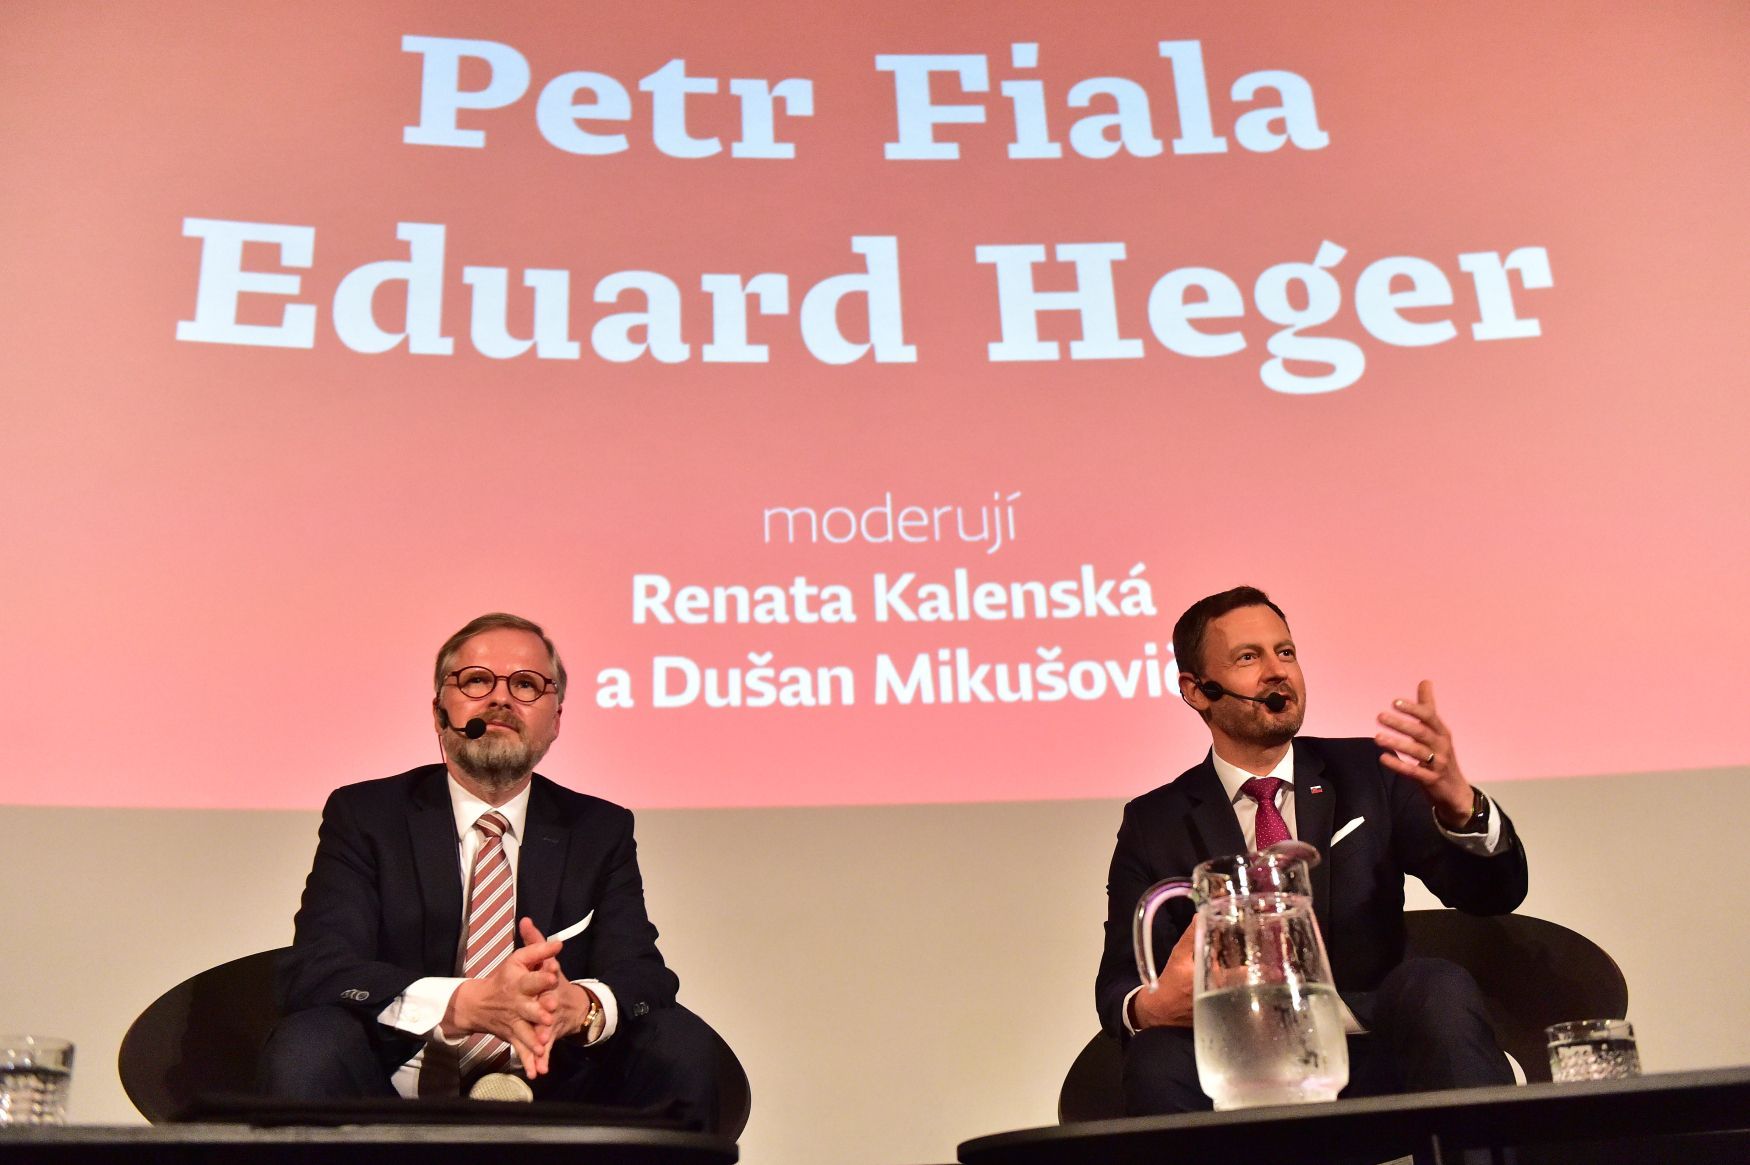 Petr Fiala, Eduard Heger, Československo, výročí rozdělení, Brno, debata